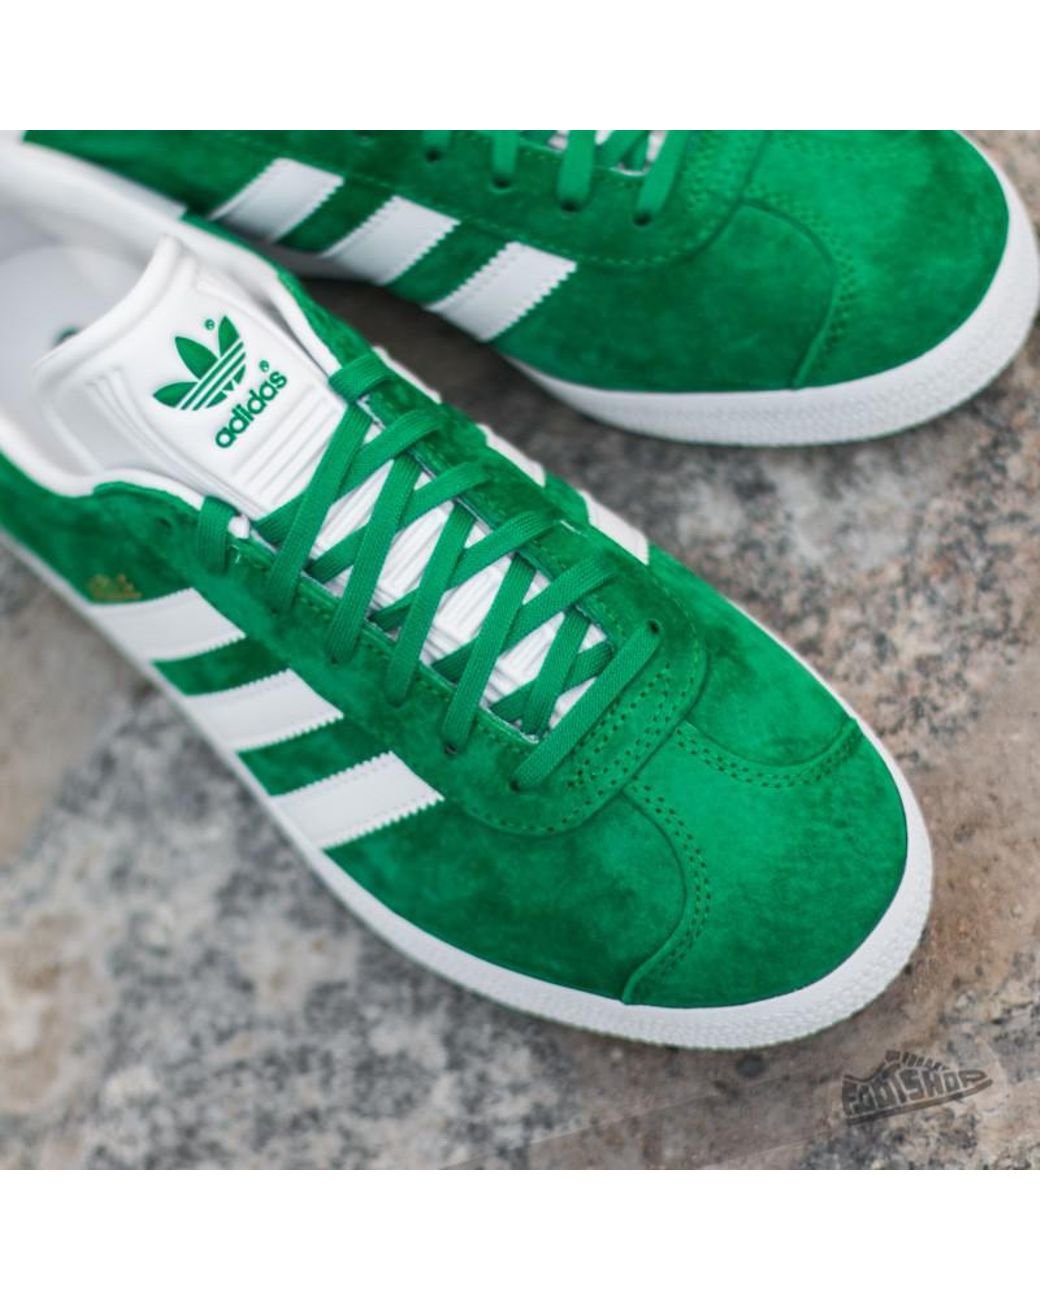 Зеленые кроссовки adidas. Adidas Gazelle зеленые. Adidas Gazelle White Green. Adidas Gazelle Green Gold. Адидас кеды Gazelle зеленые.